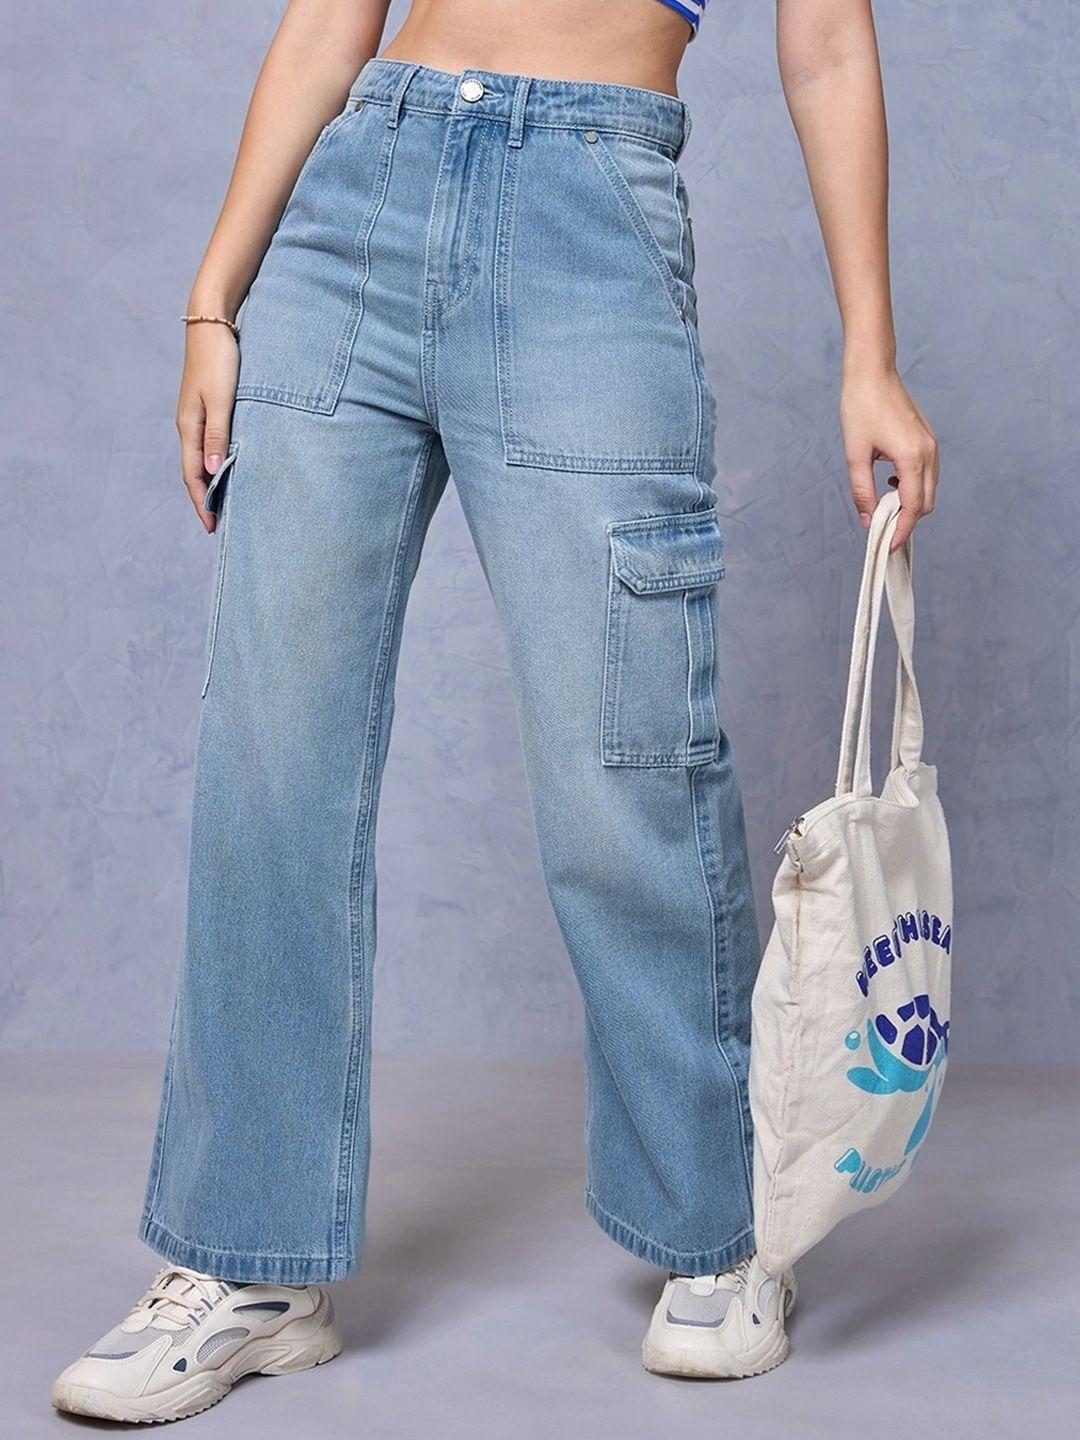 Bewakoof Women Straight Fit High-Rise Light Fade Cotton Cargo Jeans